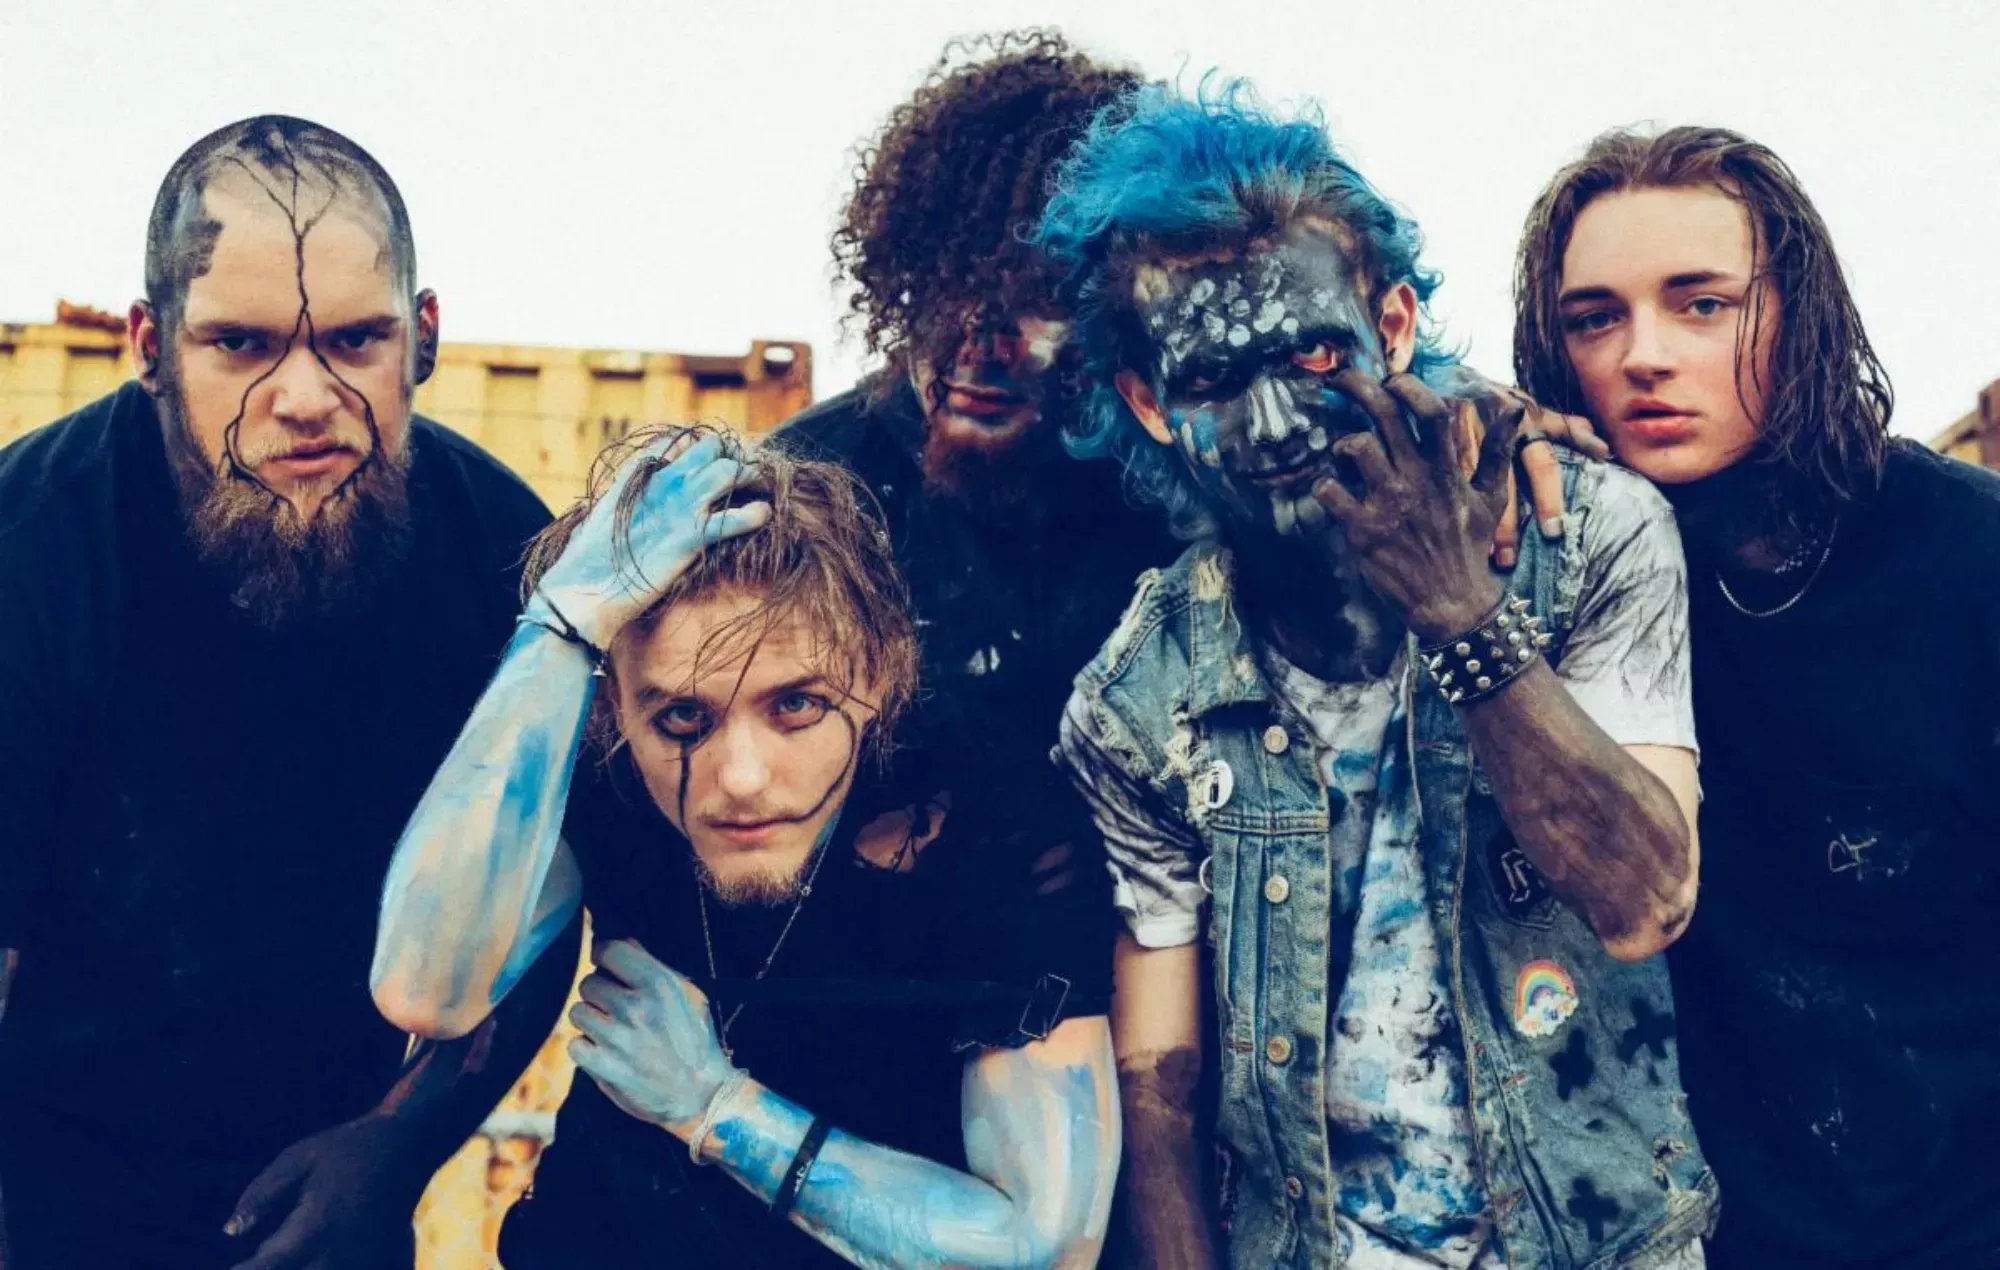 Vended, con los hijos de los miembros de Slipknot, comparten su nuevo single 